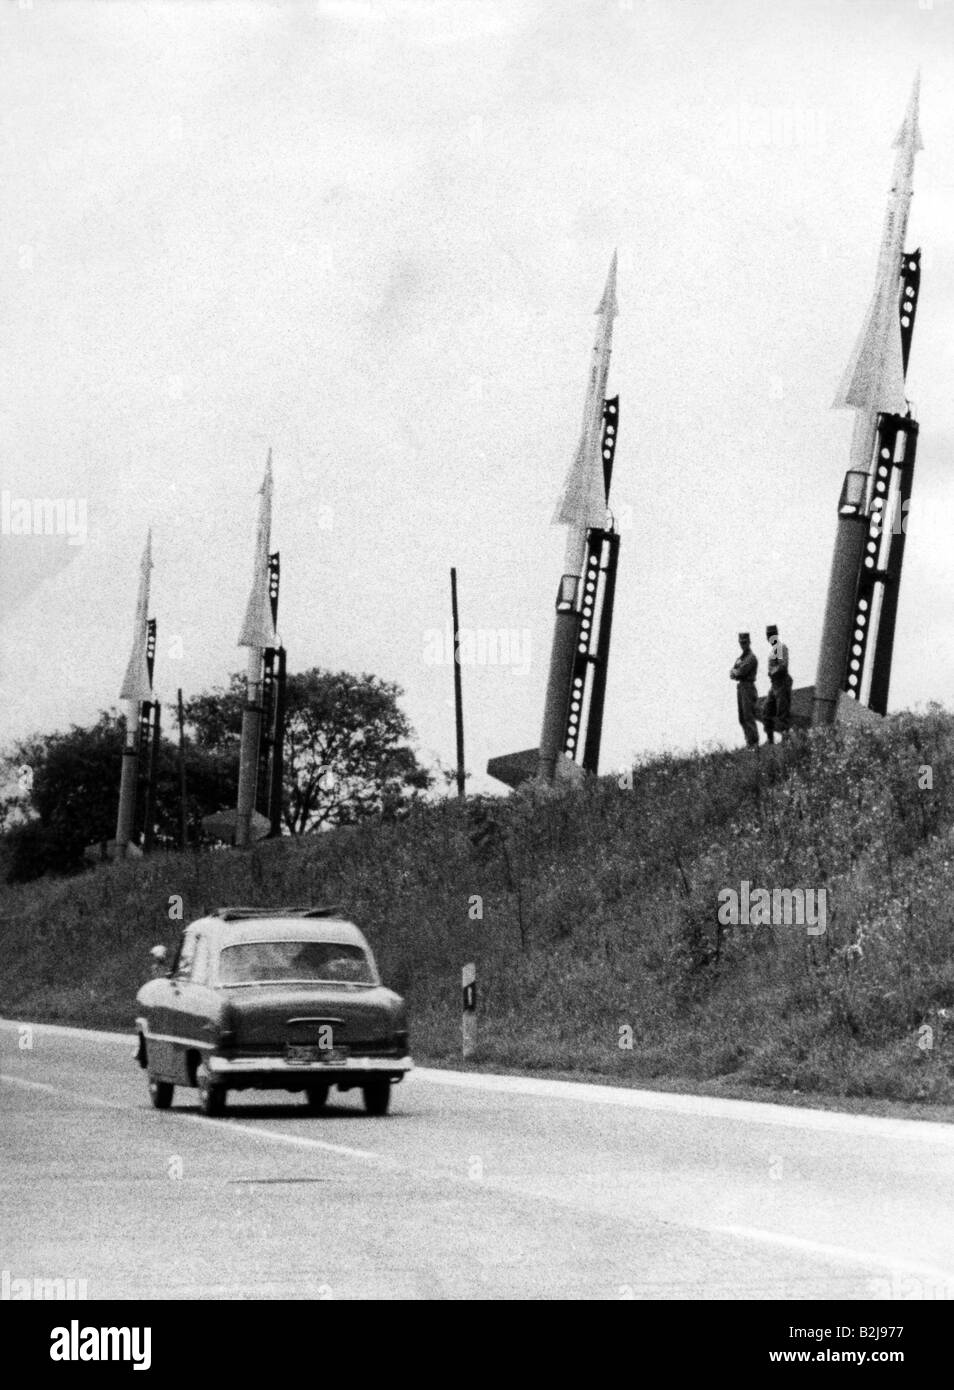 Militar, EE.UU., ejército, antiaéreo, misil "Nike-Ajax" (SAM-N-7/MIN-3), en servicio 1958 - 1979, batería lista para el lanzamiento, Frankfurt - Darmstadt Autobahn, República Federal de Alemania, 25.5.1955, , Foto de stock